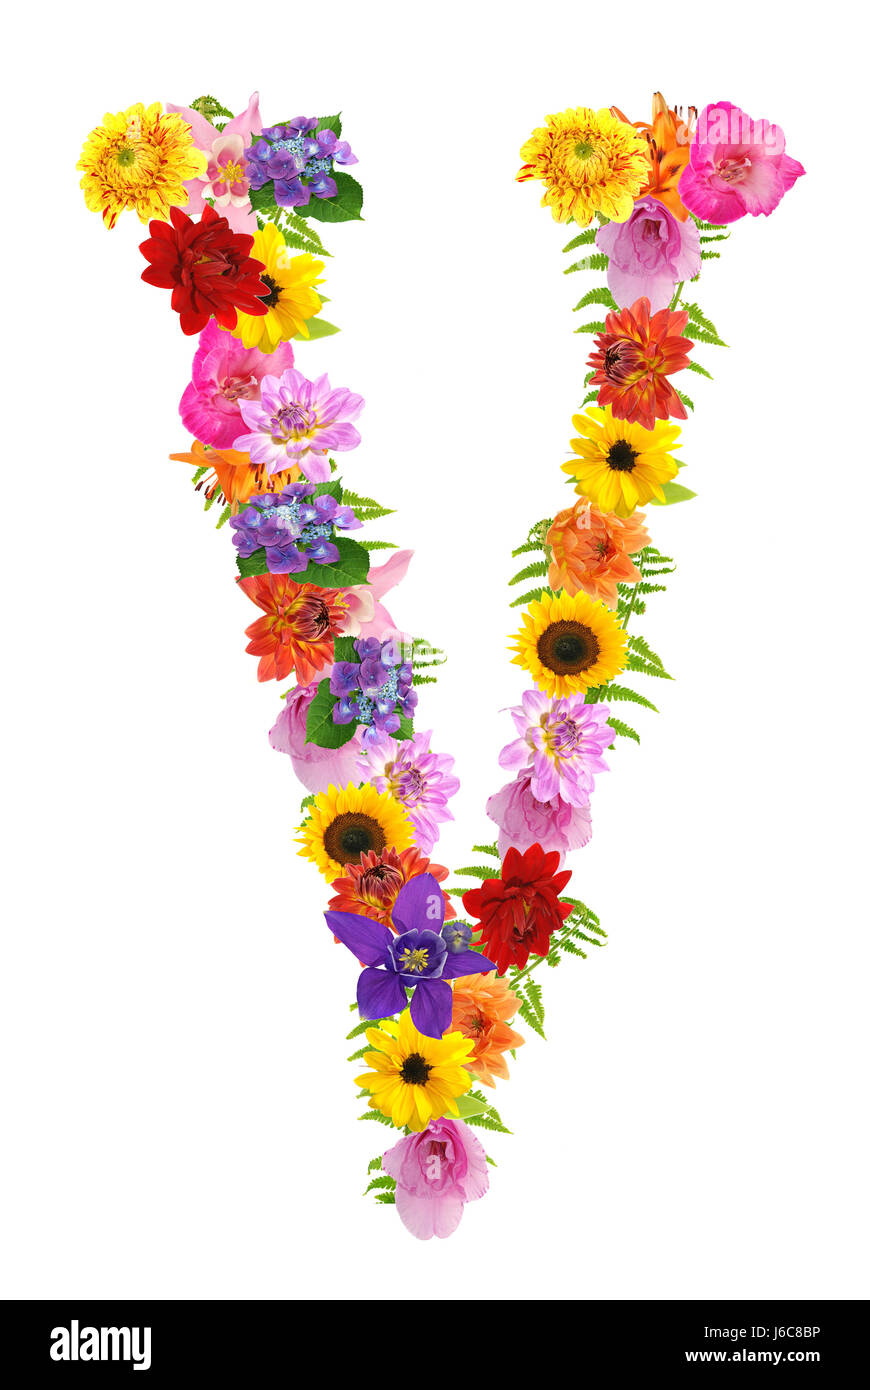 Blume Blumen Pflanzen Buchstaben Buchstaben Alphabet symbolische farbig  bunt Stockfotografie - Alamy